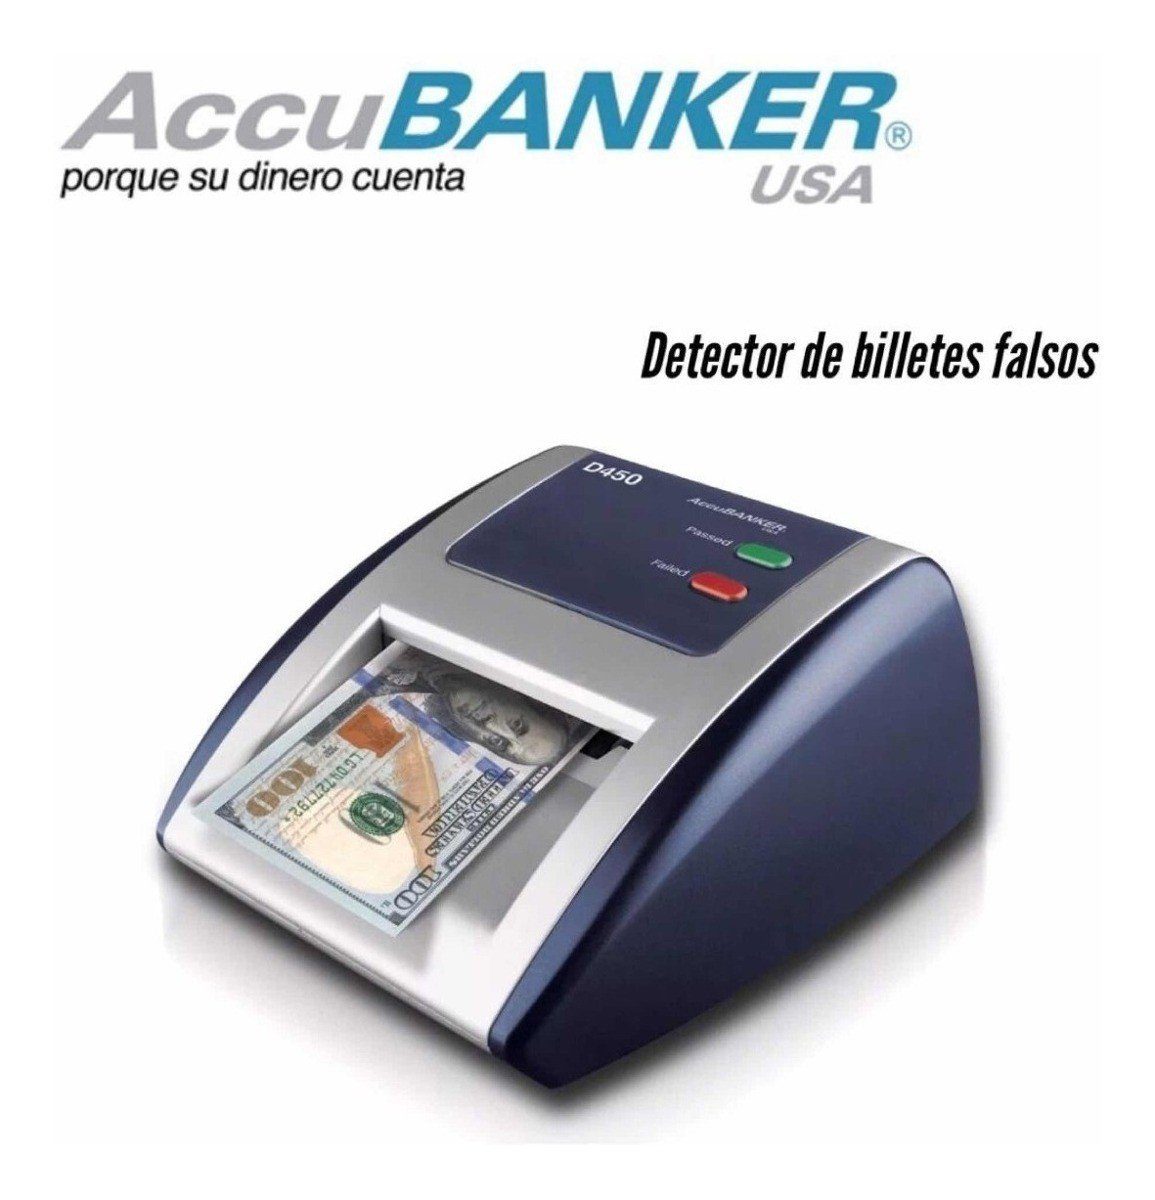 Genial detector de billetes falsos! 🤑 . ✓Detector automático de